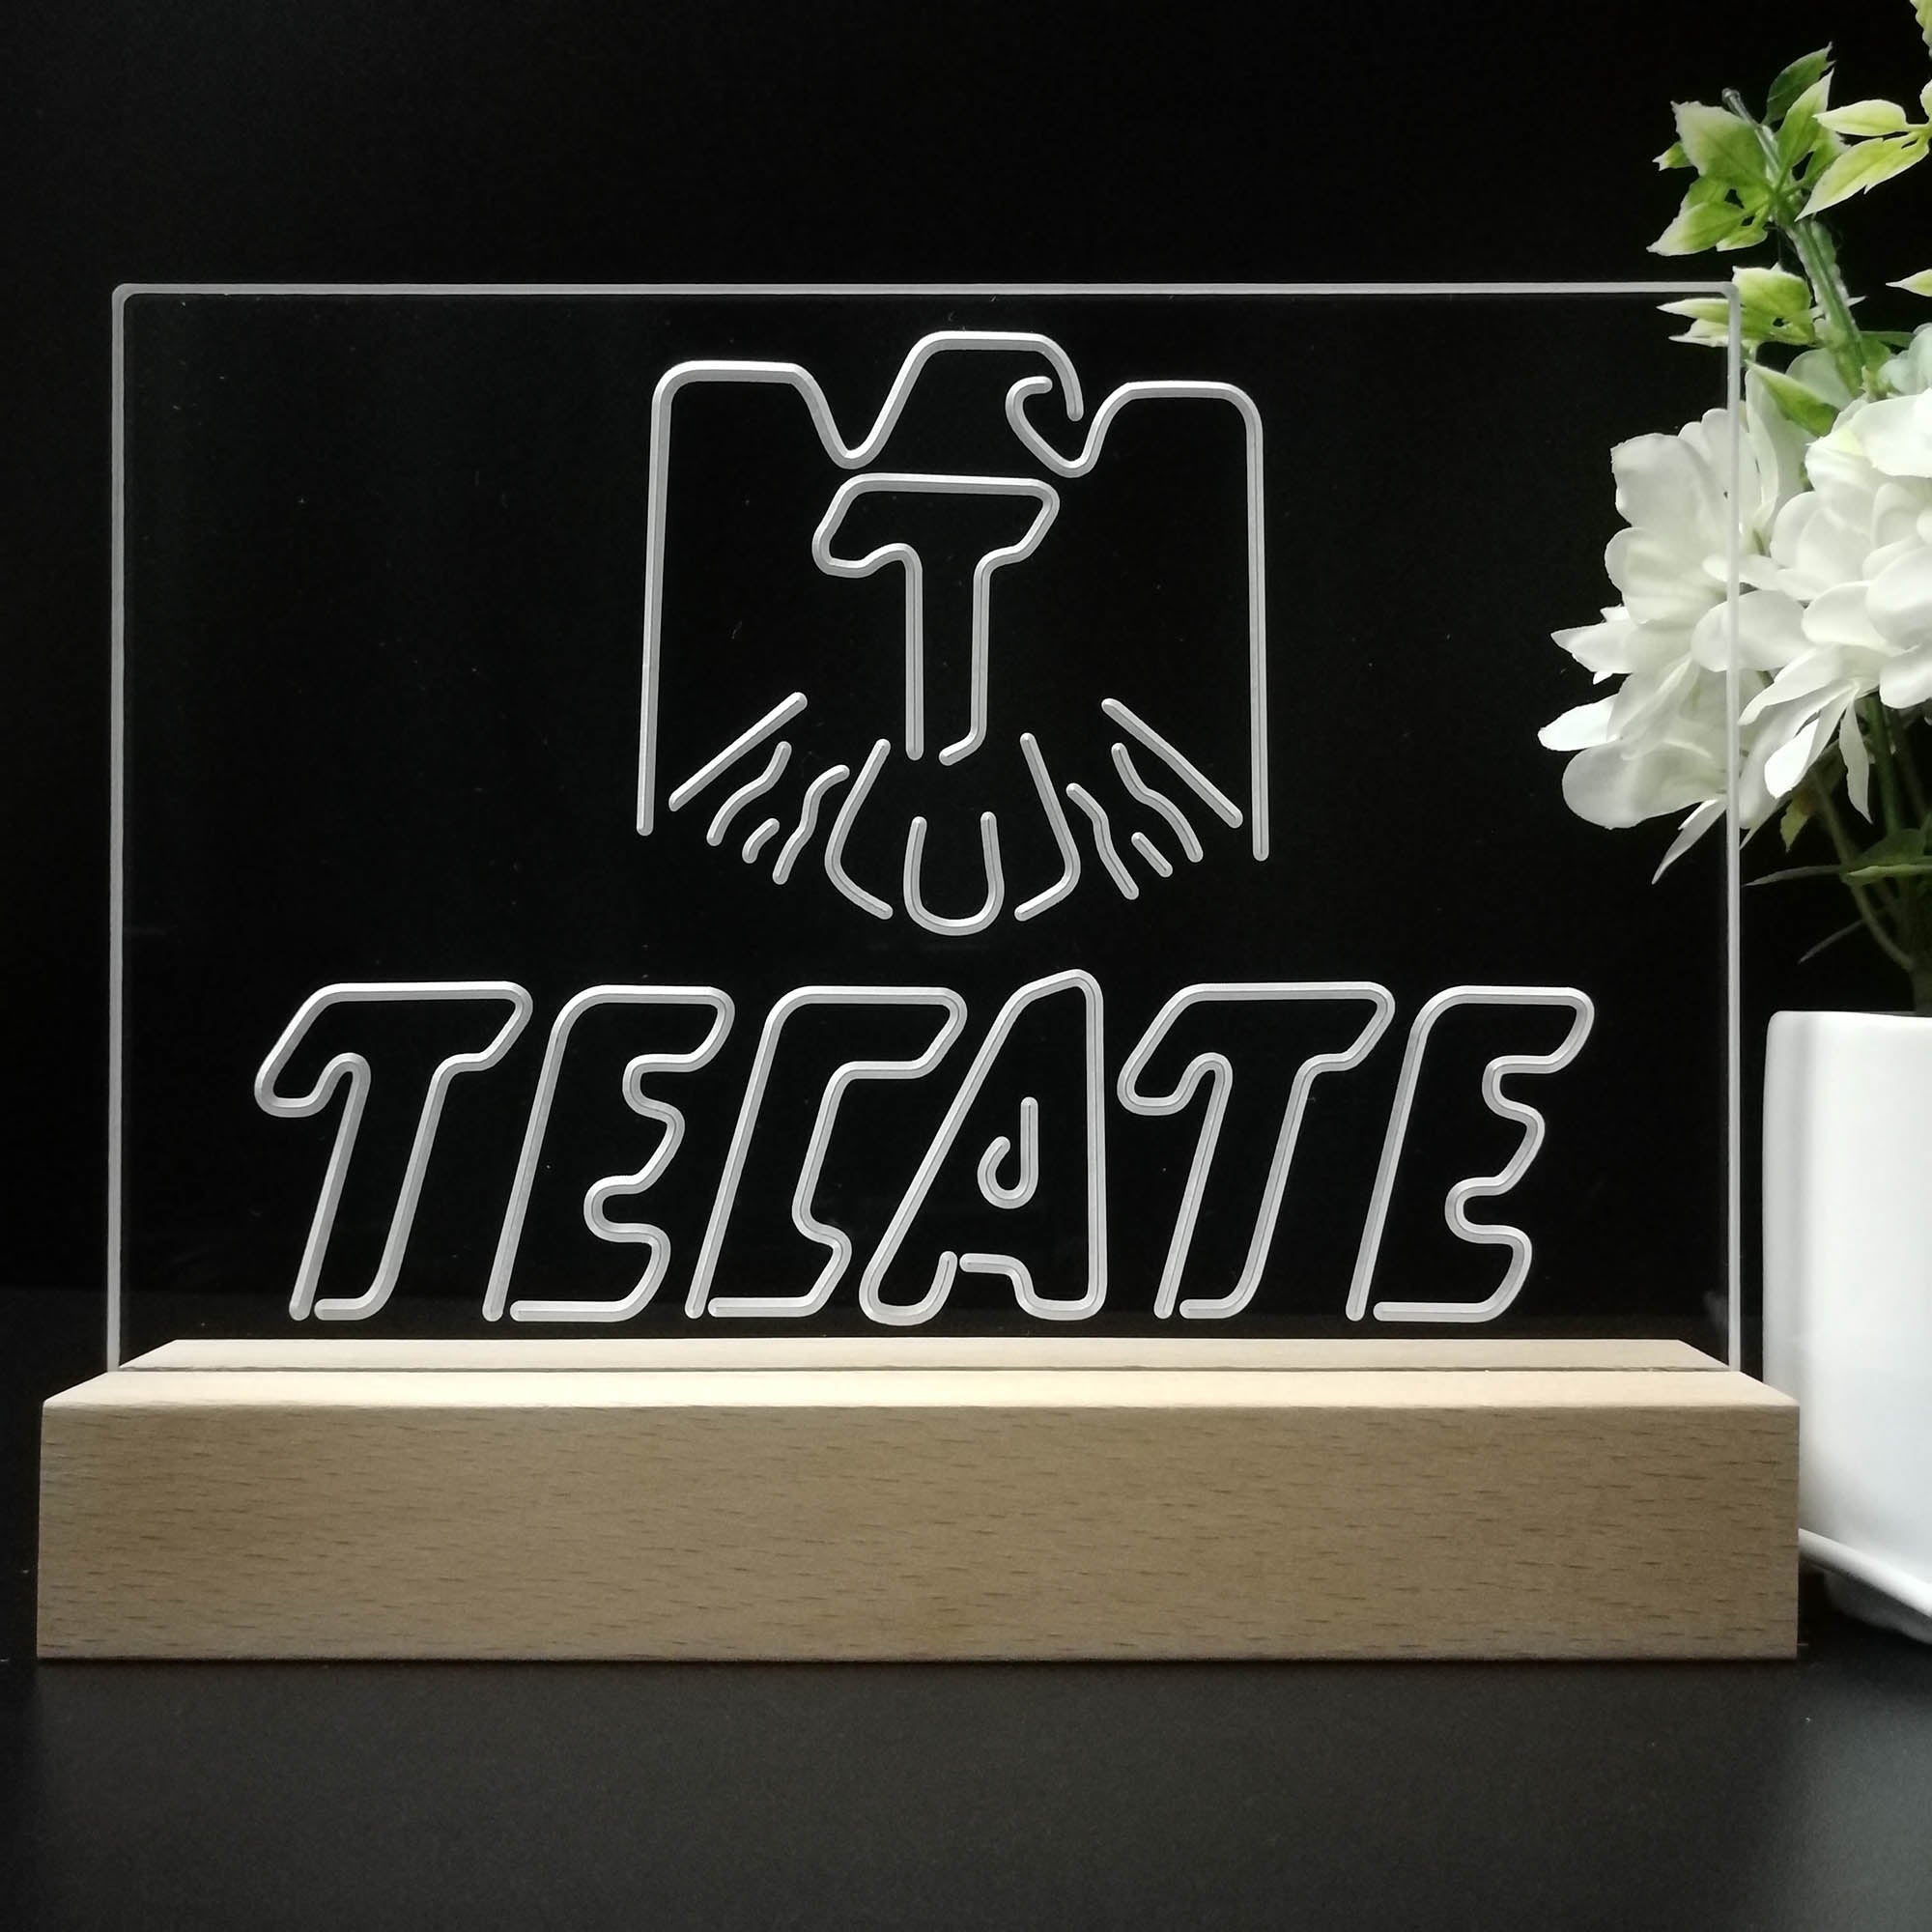 Tecate Beer Bar Night Light 3D Illusion Lamp Home Bar Decor